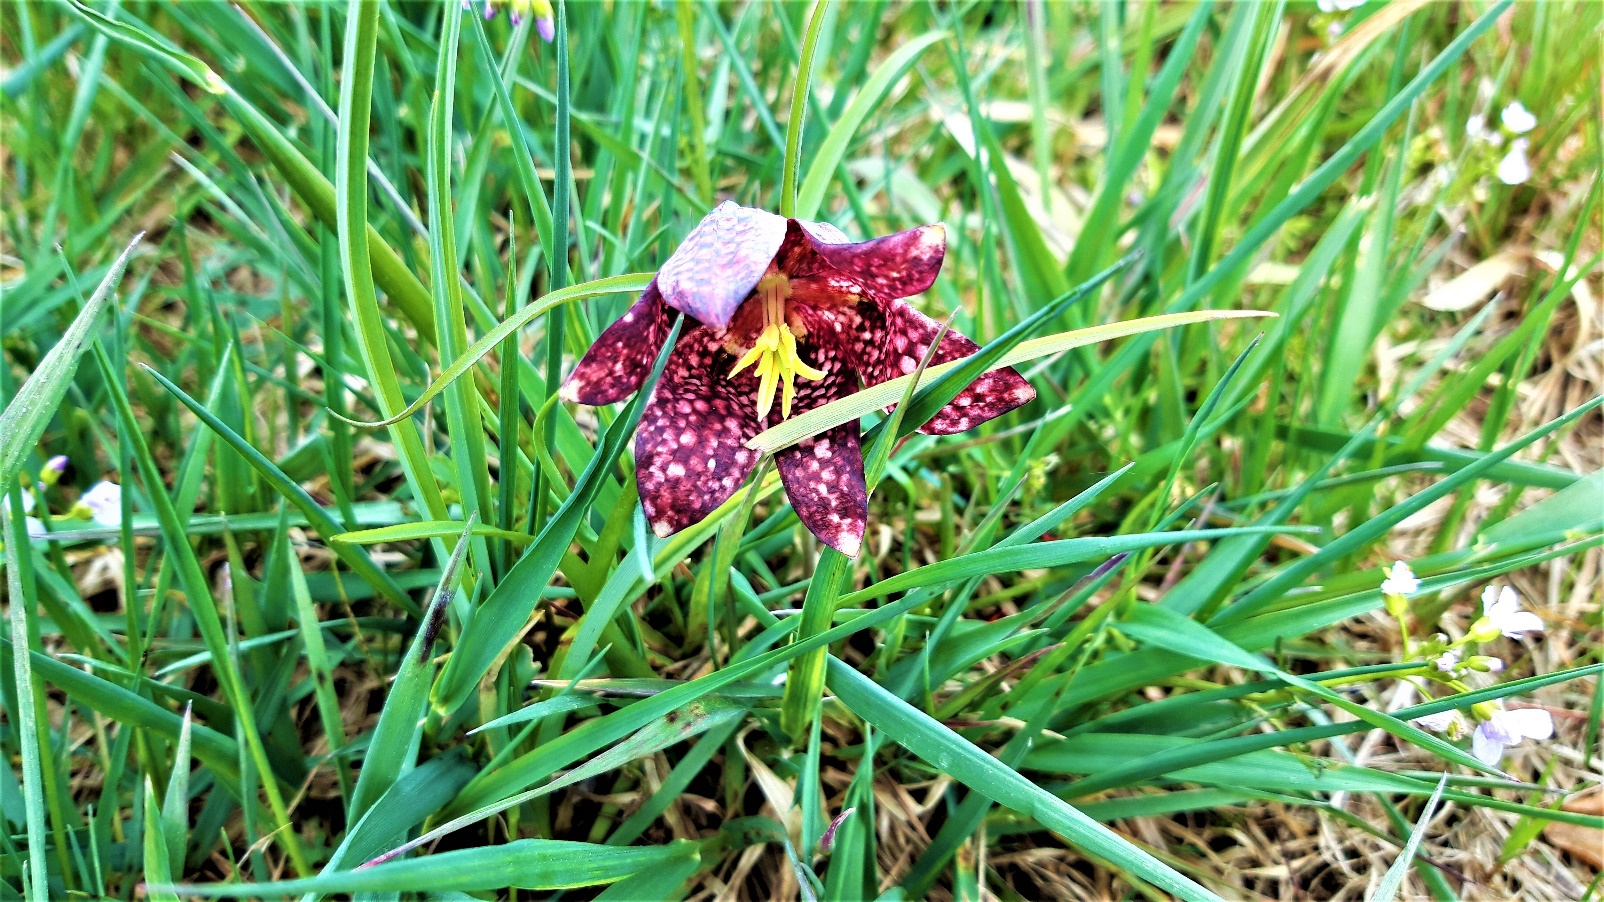 Slika, ki vsebuje besede rastlina, na prostem, trava, orhideja

Opis je samodejno ustvarjen